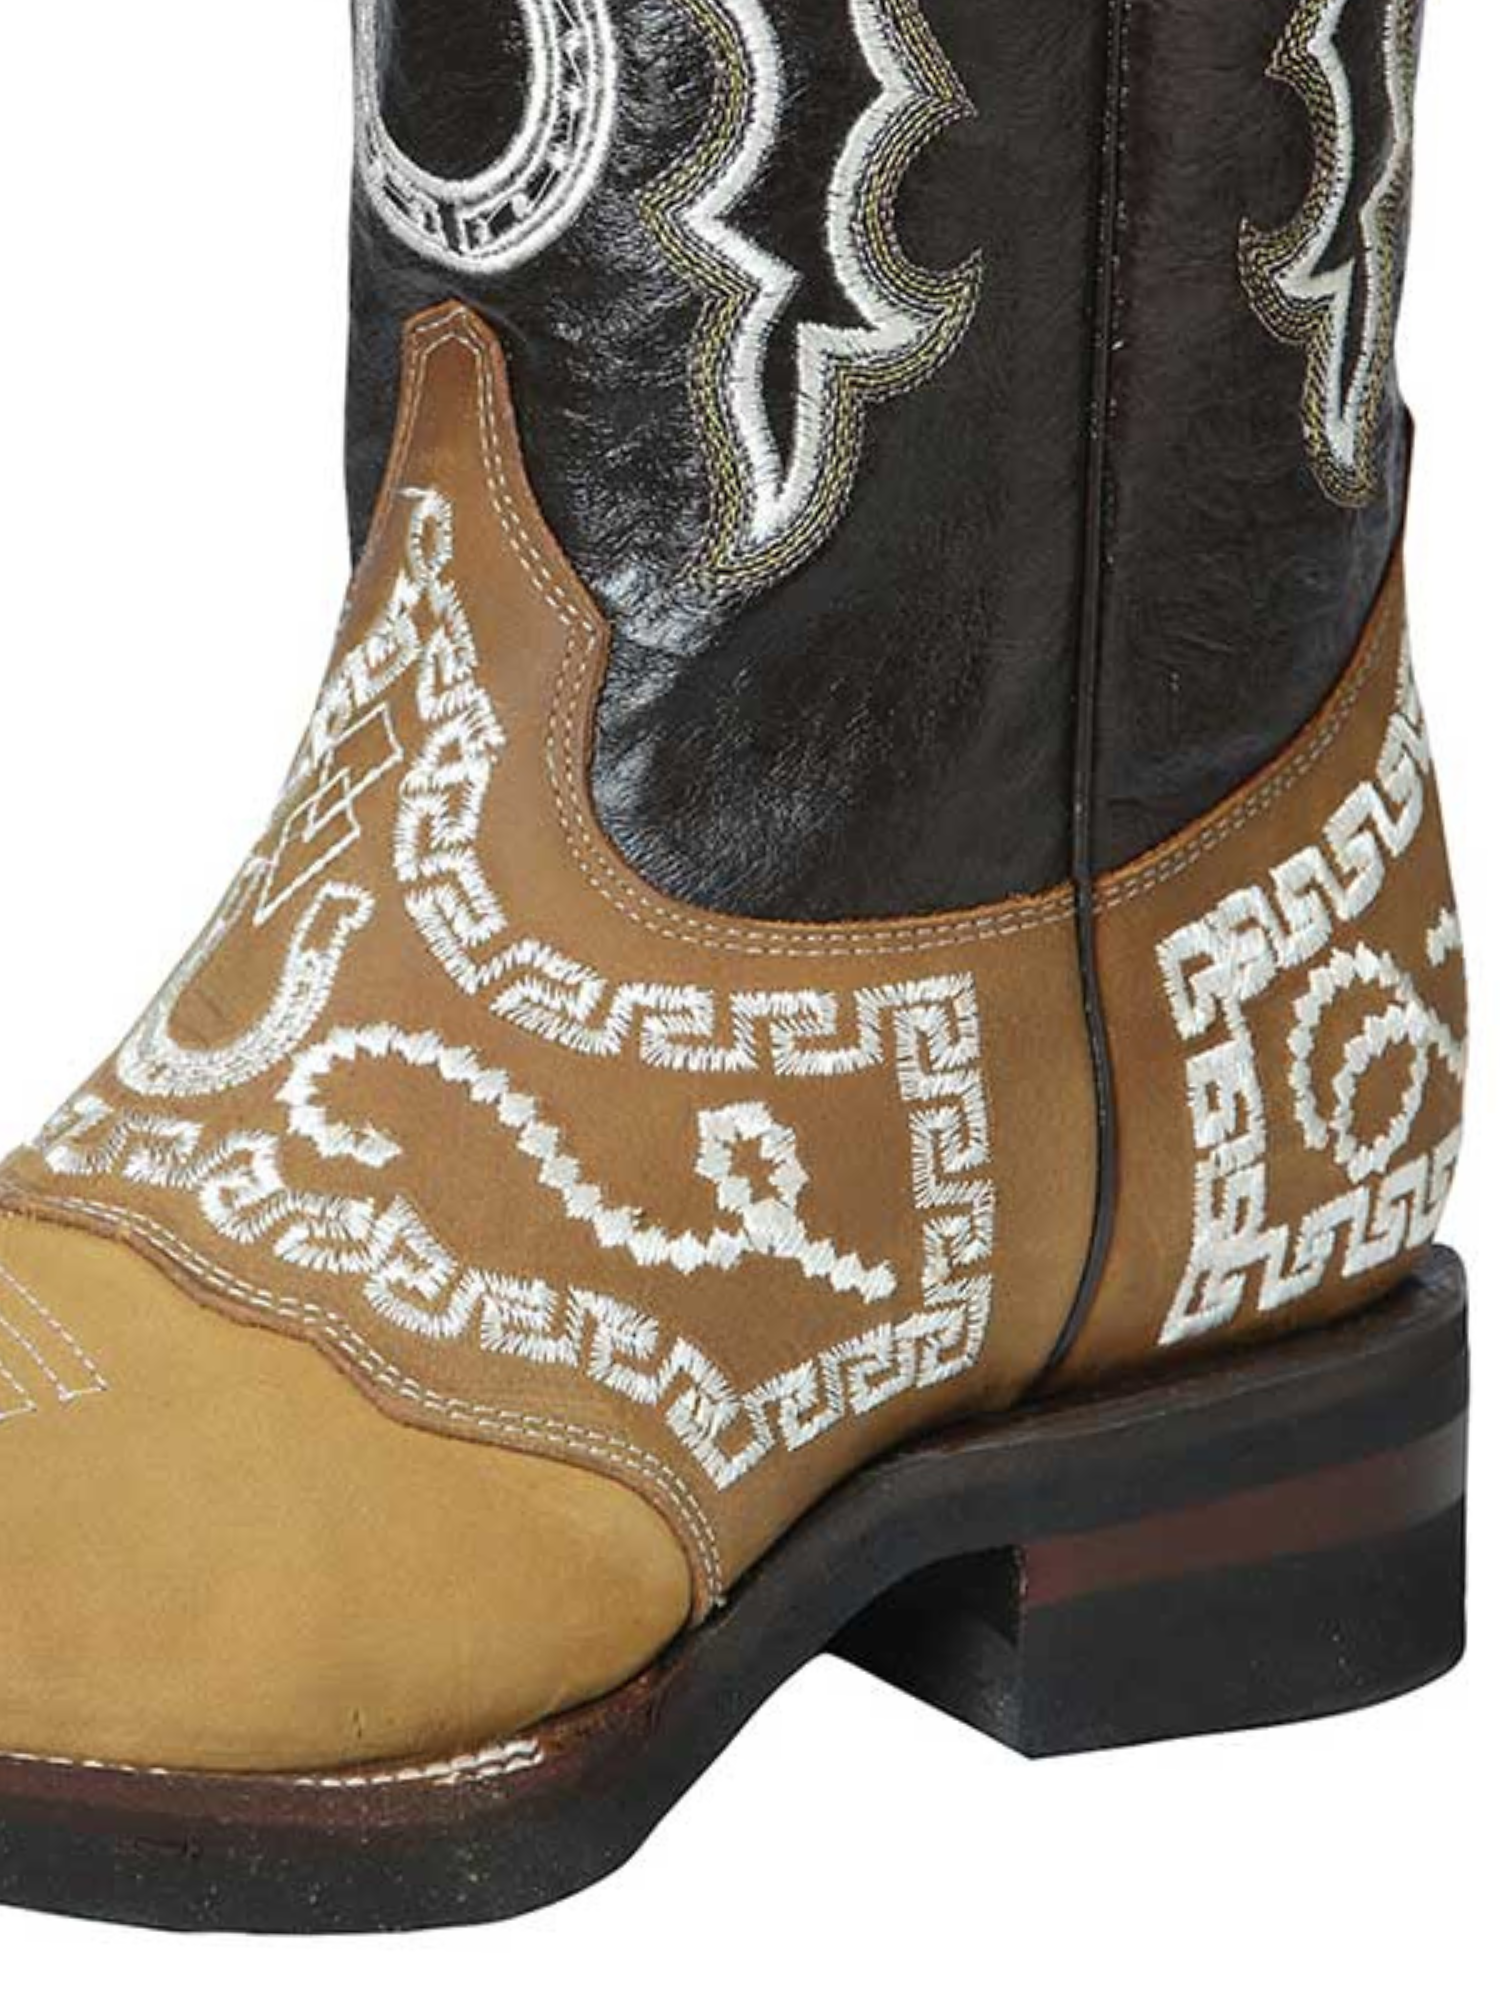 Botas Vaqueras Rodeo con Antifaz Bordado de Piel Nobuck para Hombre 'El General' - ID: 51111 Cowboy Boots El General 